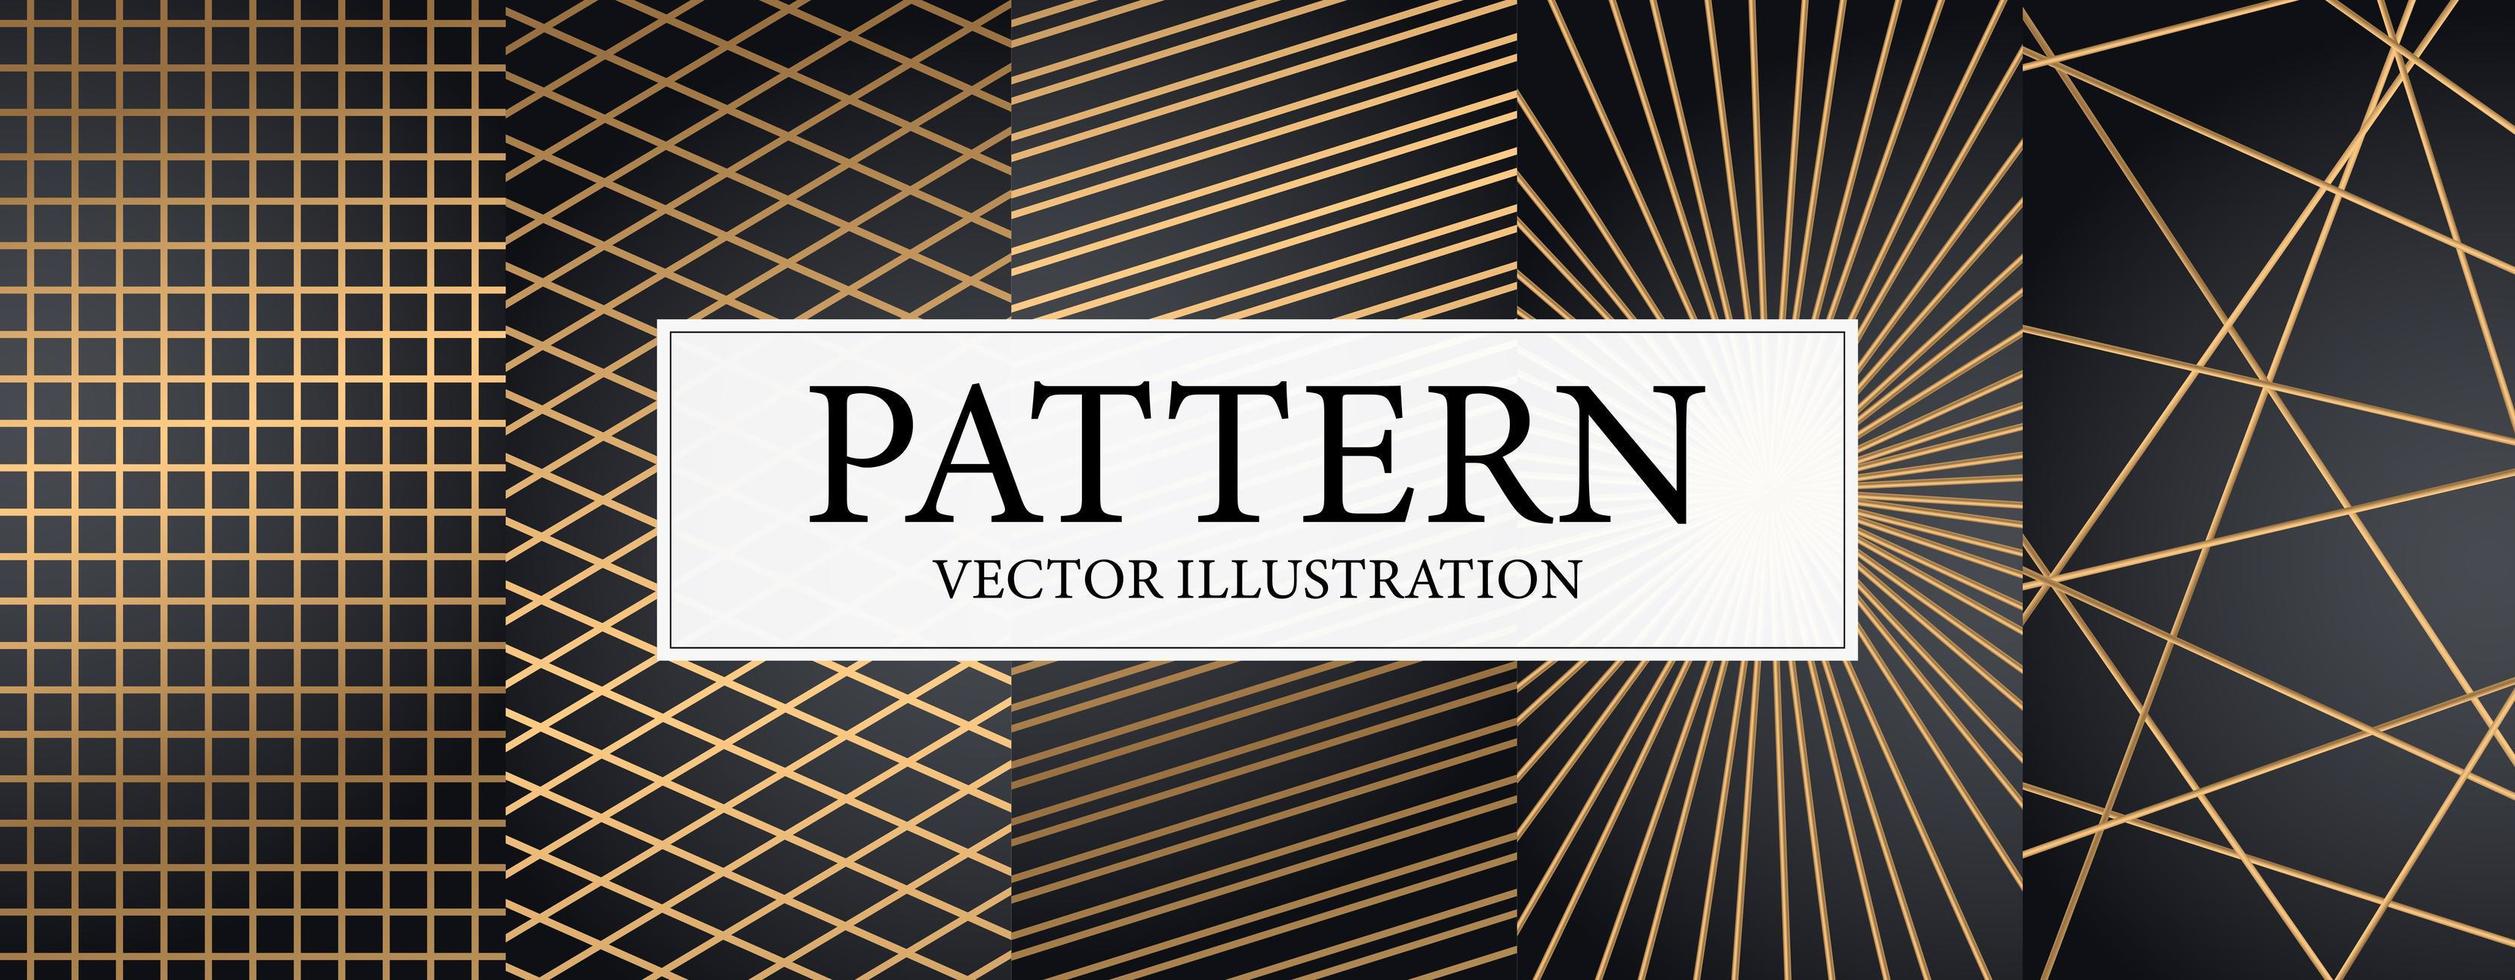 conjunto de plantillas de postales web de lujo geométricas modernas de 5 piezas para negocios o presentaciones con líneas doradas sobre fondo azul oscuro - vector